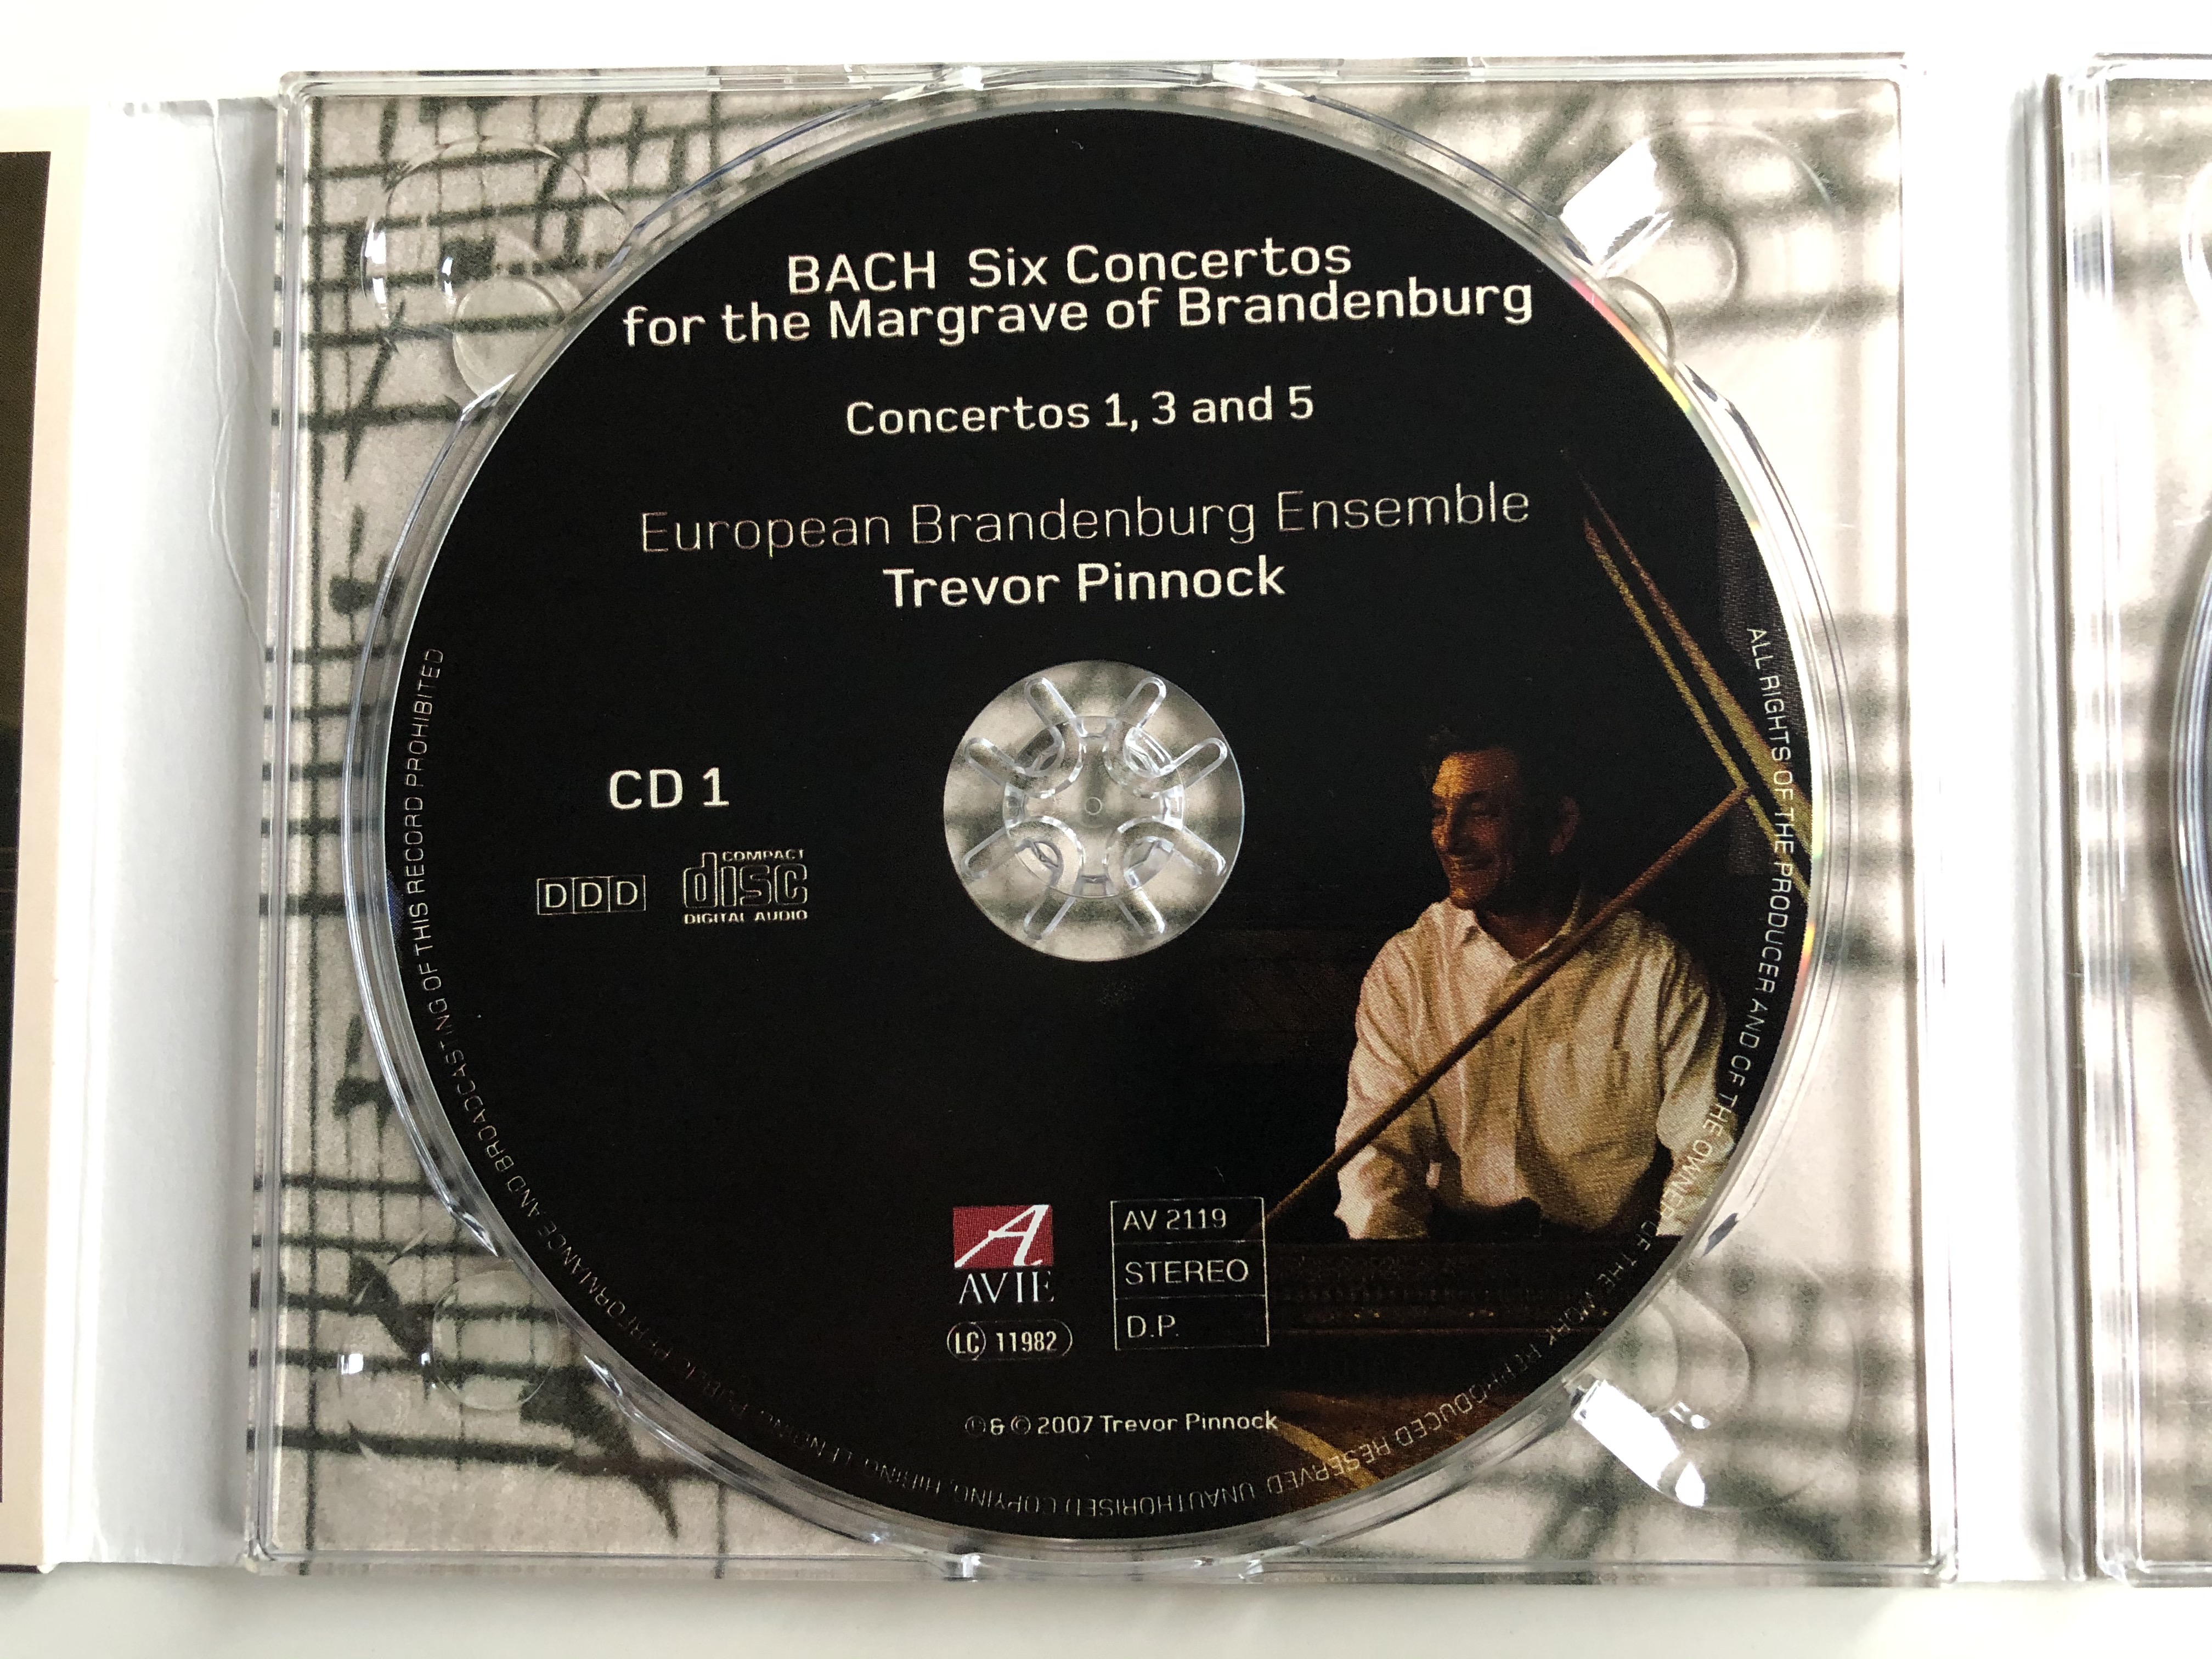 bach-six-concertos-for-the-margrave-of-brandenburg-trevor-pinnock-european-brandenburg-ensemble-avie-records-2x-audio-cd-2007-stereo-av-2119-4-.jpg